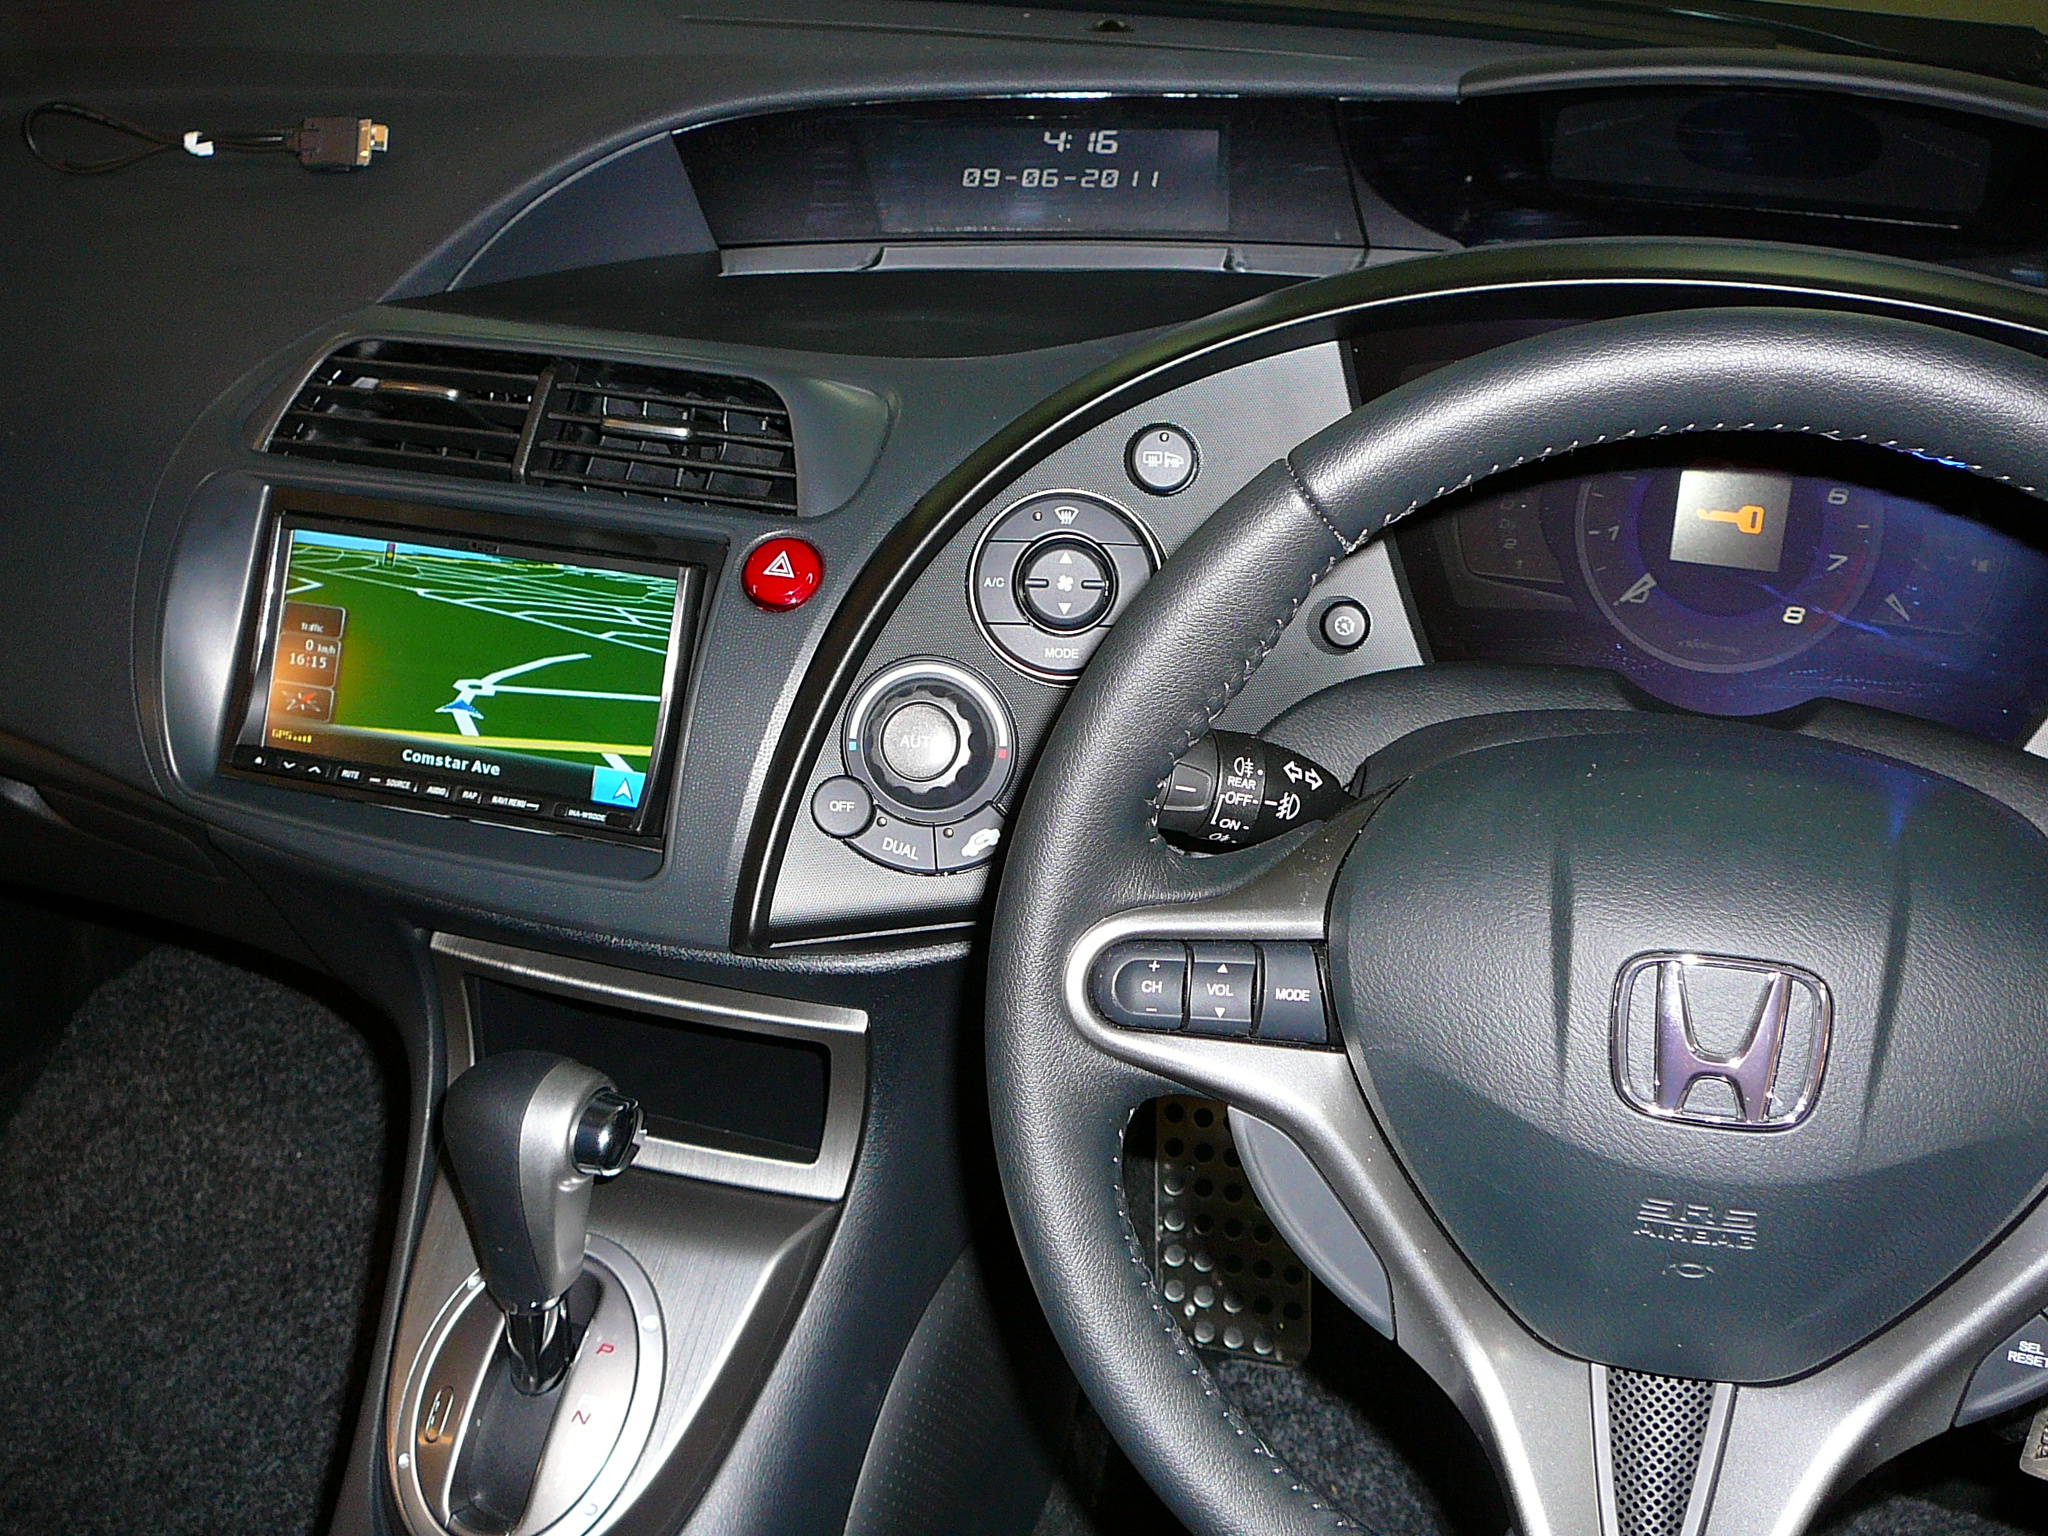 Honda Civic 2010 Alpine GPS Navigation system